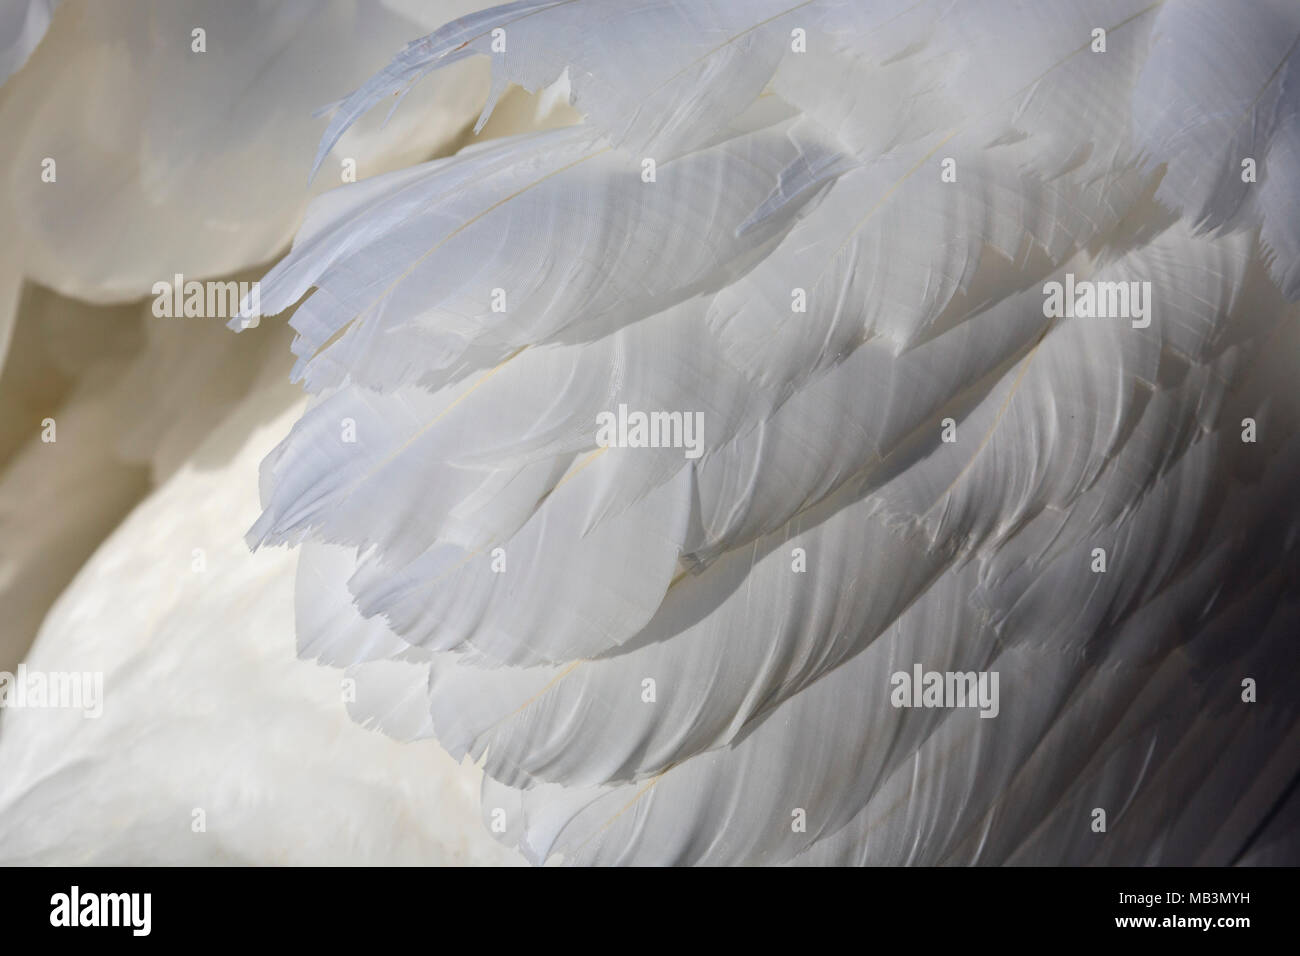 Detalle de plumas de cisne blancas Foto de stock